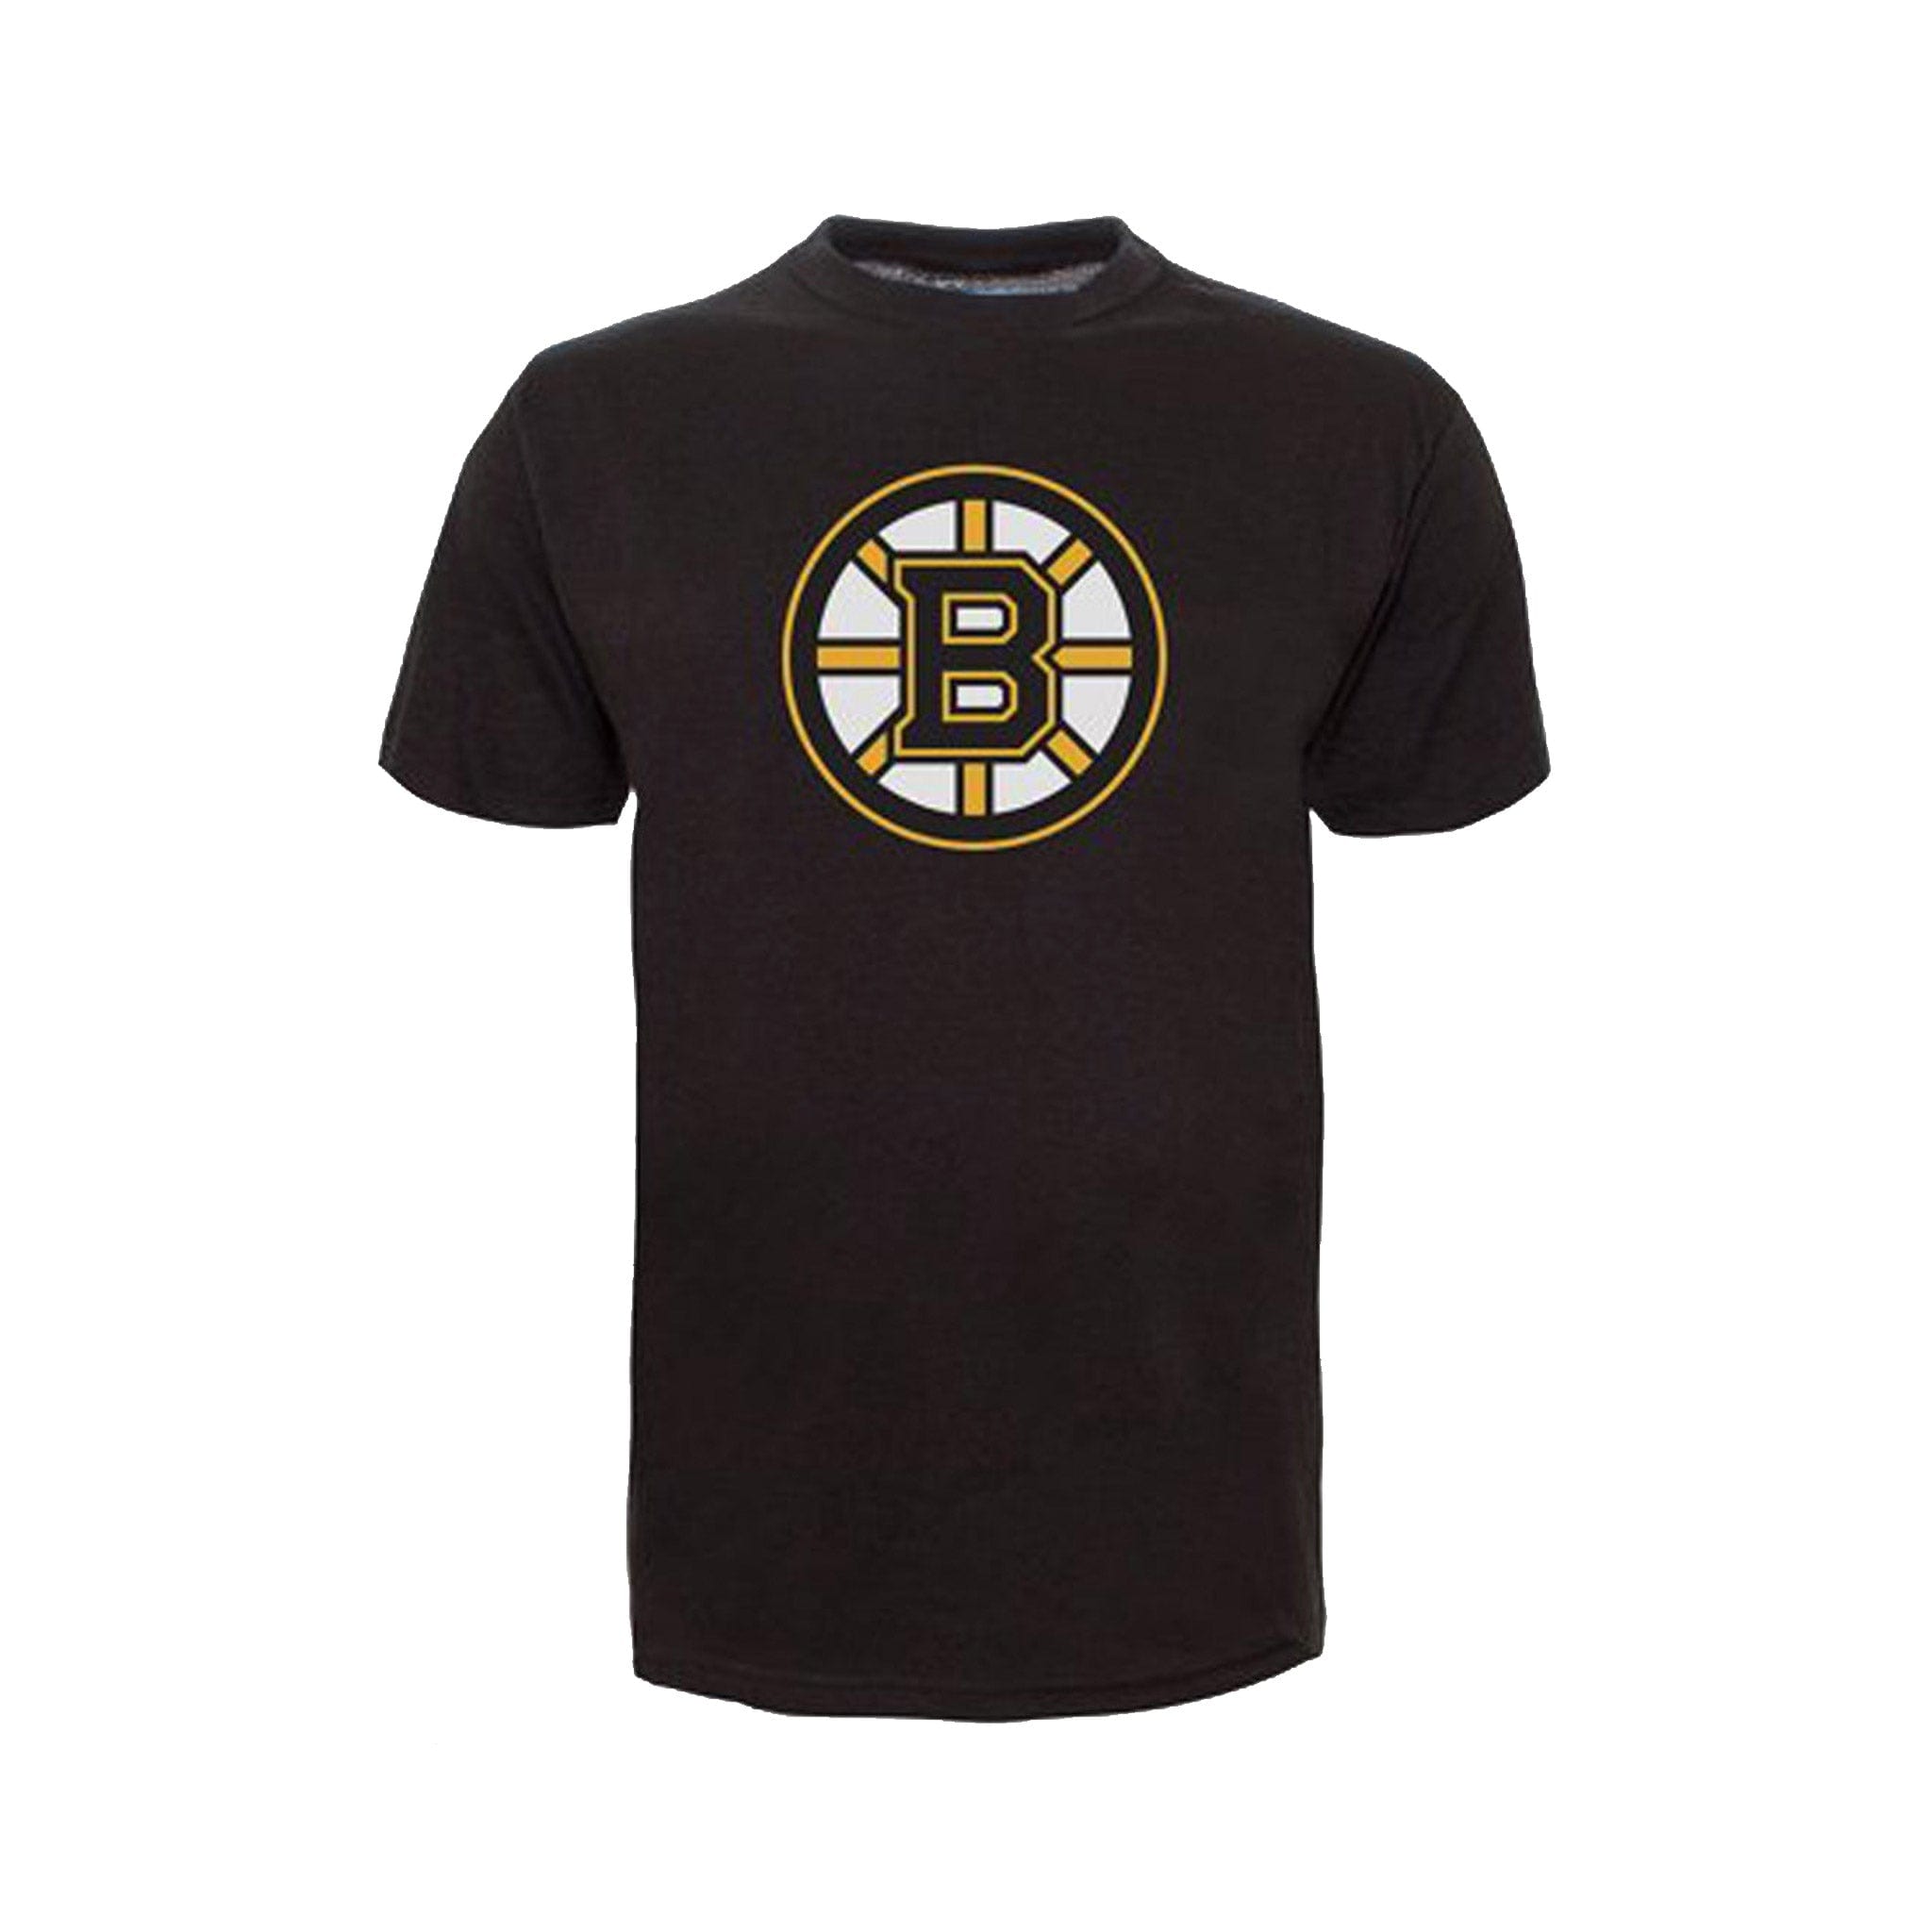 http://www.thehockeyshop.com/cdn/shop/products/47-brand-shirts-boston-bruins-47-brand-fan-tee-shirt-black-xxl-28756796407874.jpg?v=1681378570